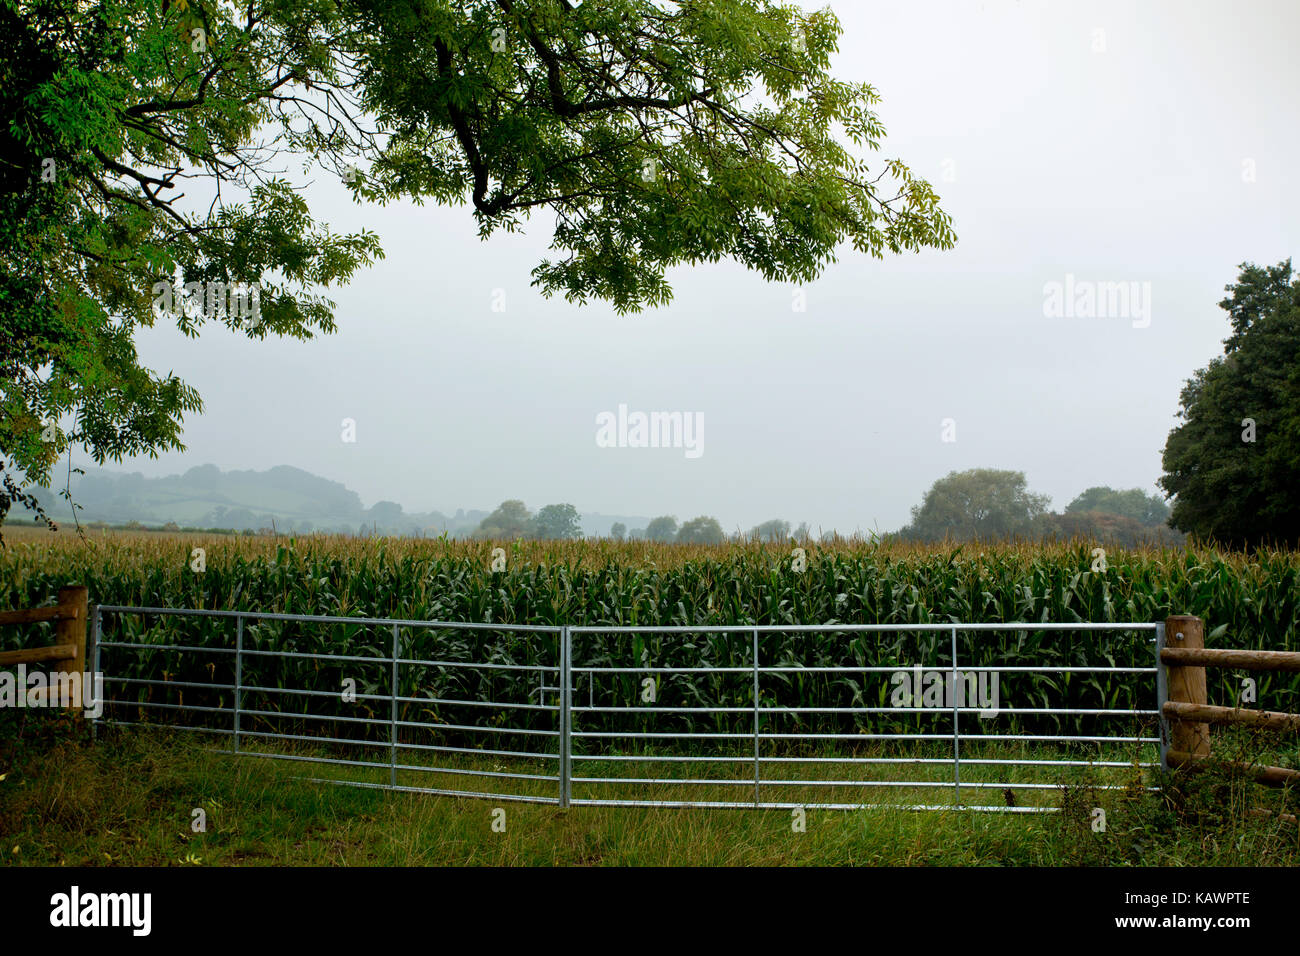 Maize field gateway Stock Photo